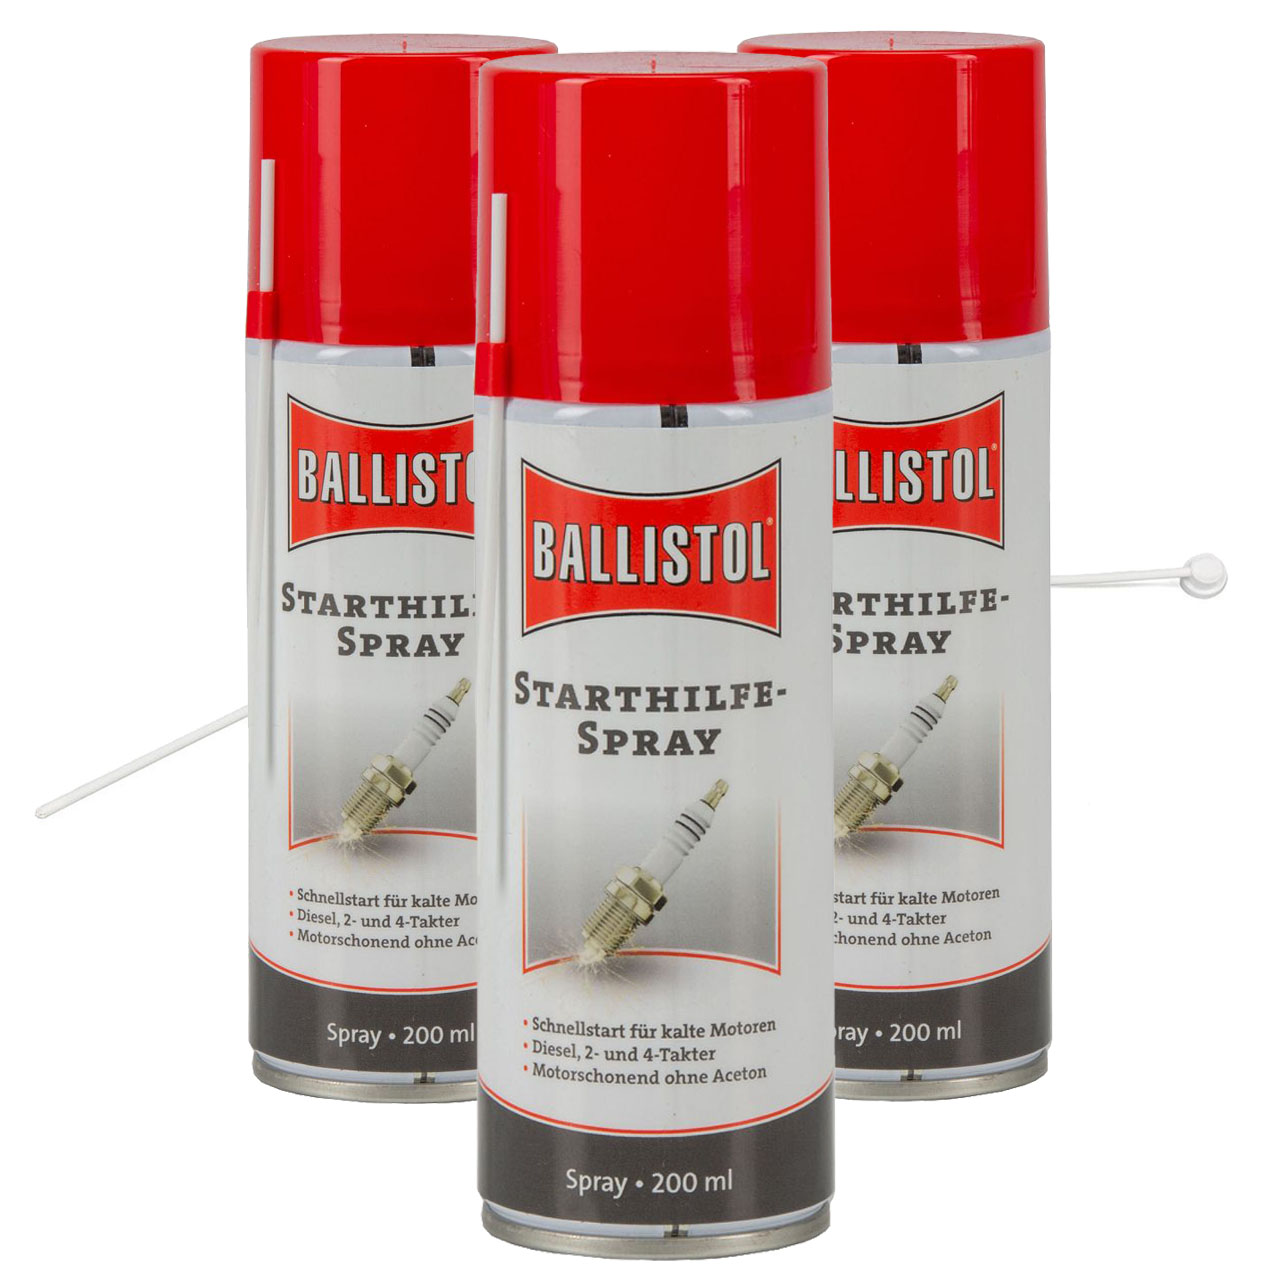 BALLISTOL Startwunder Spray Starthilfespray Starterspray 600ml +